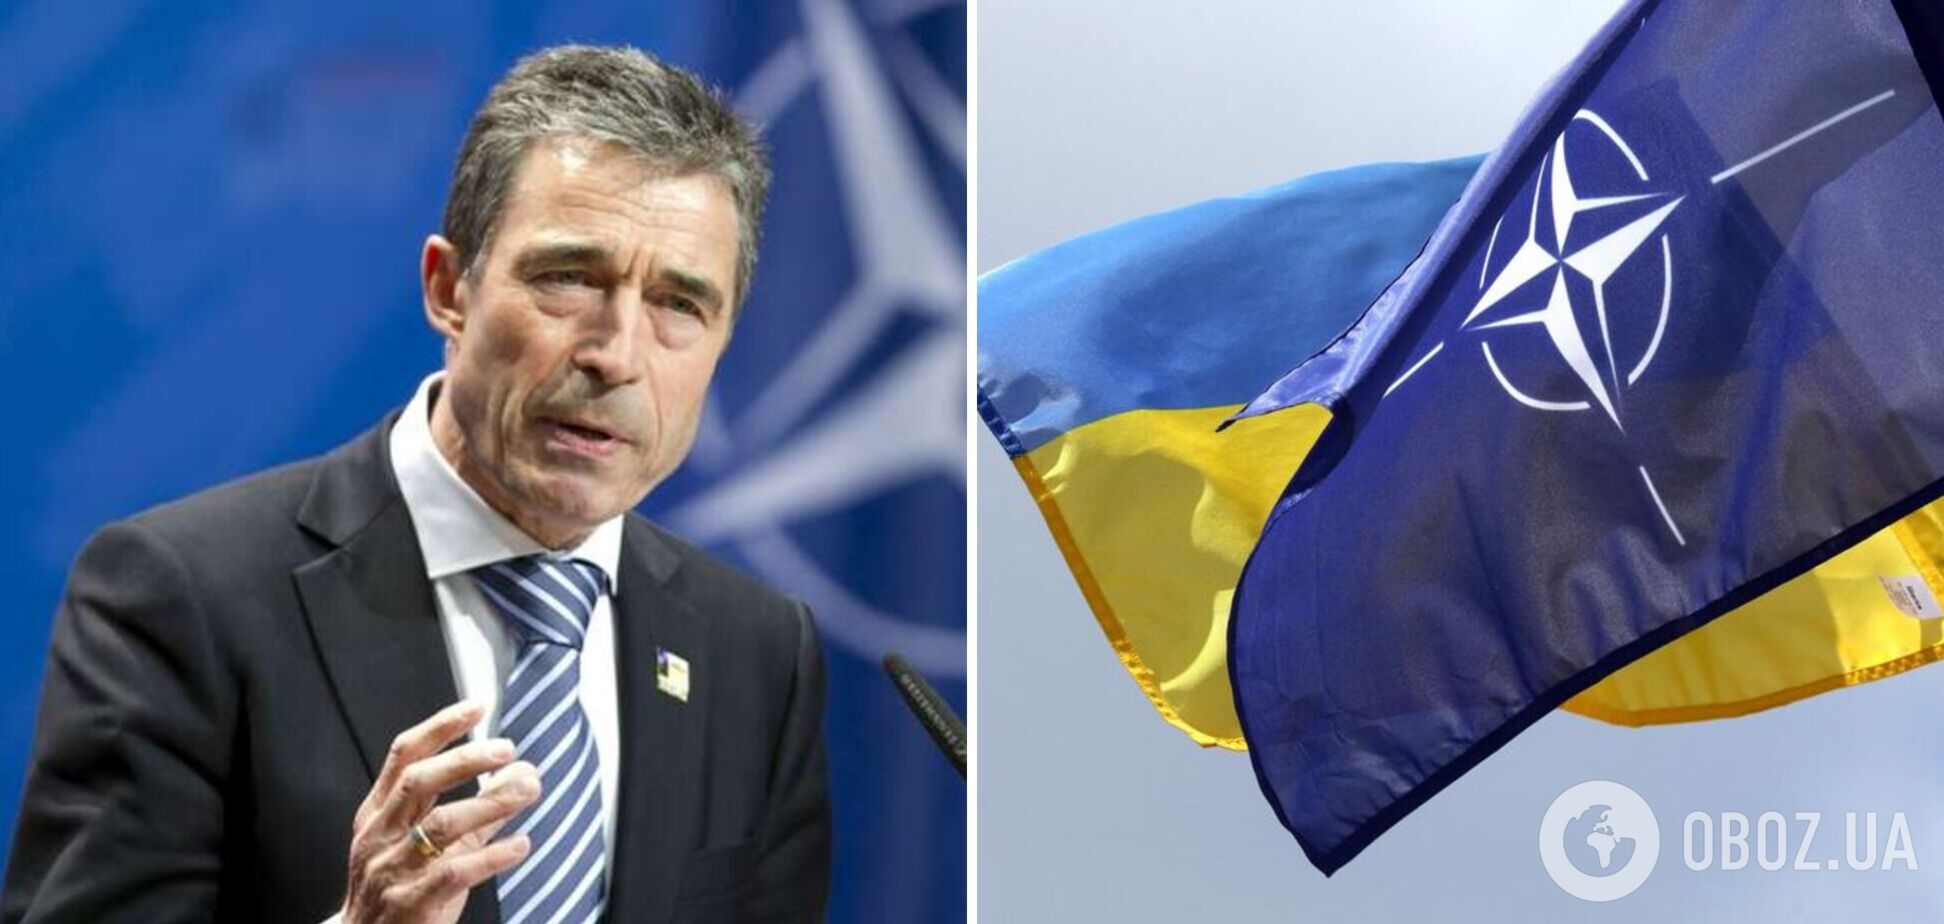 НАТО в обмен на территории или корейский вариант прекращения войны: какие угрозы несут для Украины мирные инициативы представителей Запада